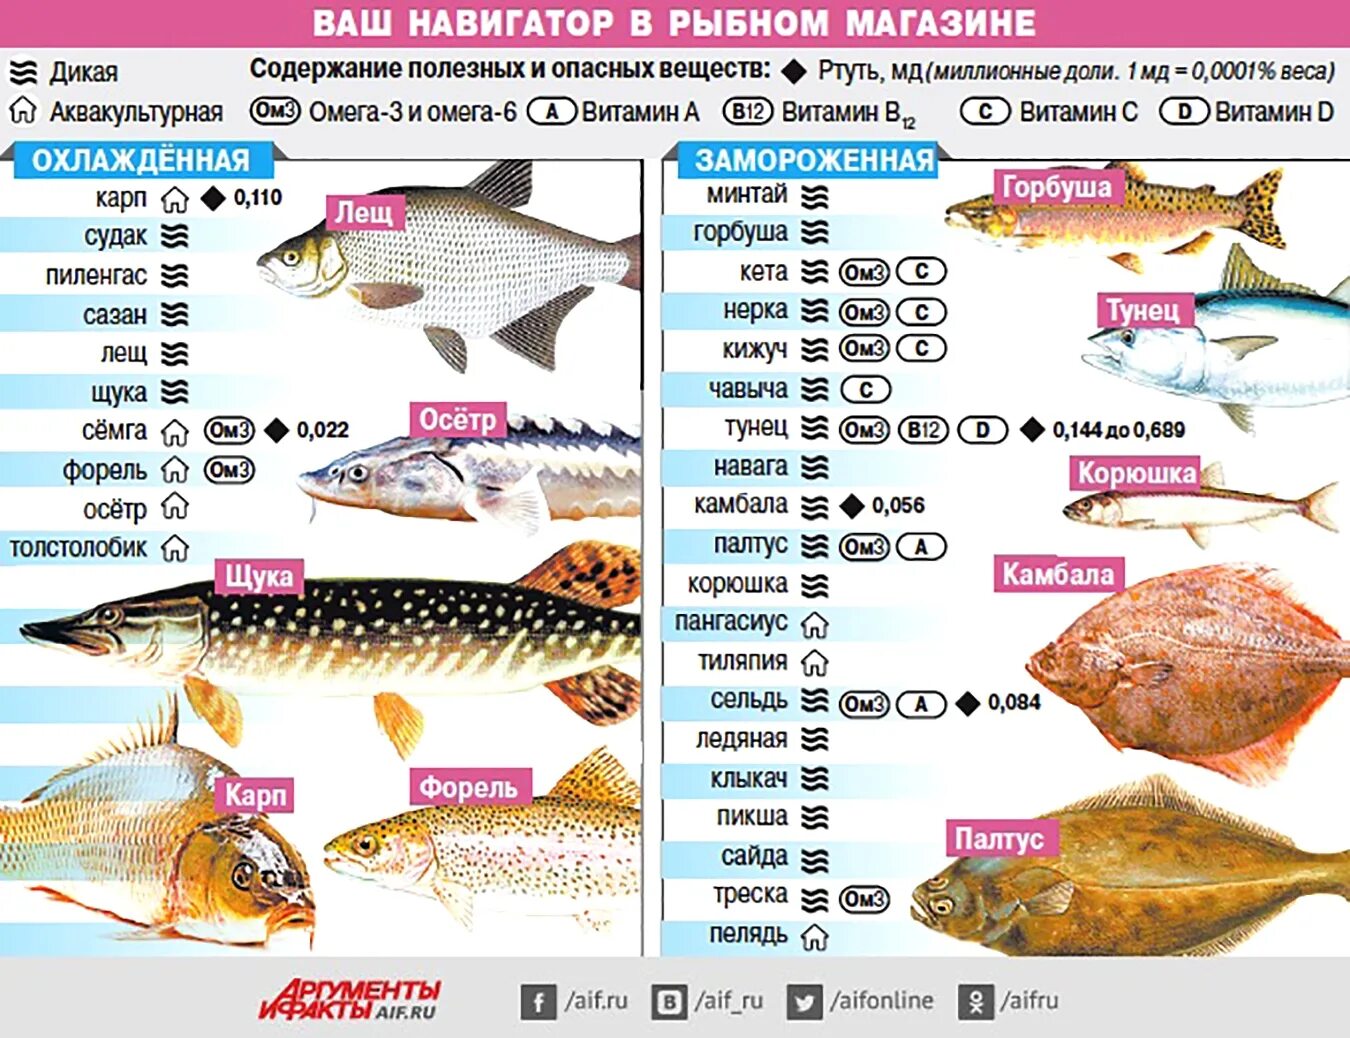 Самые популярные сорта рыбы. Самые полезные сорта рыбы. Содержание витаминов в рыбе. Таблица полезной рыбы. Какую рыбу можно до года